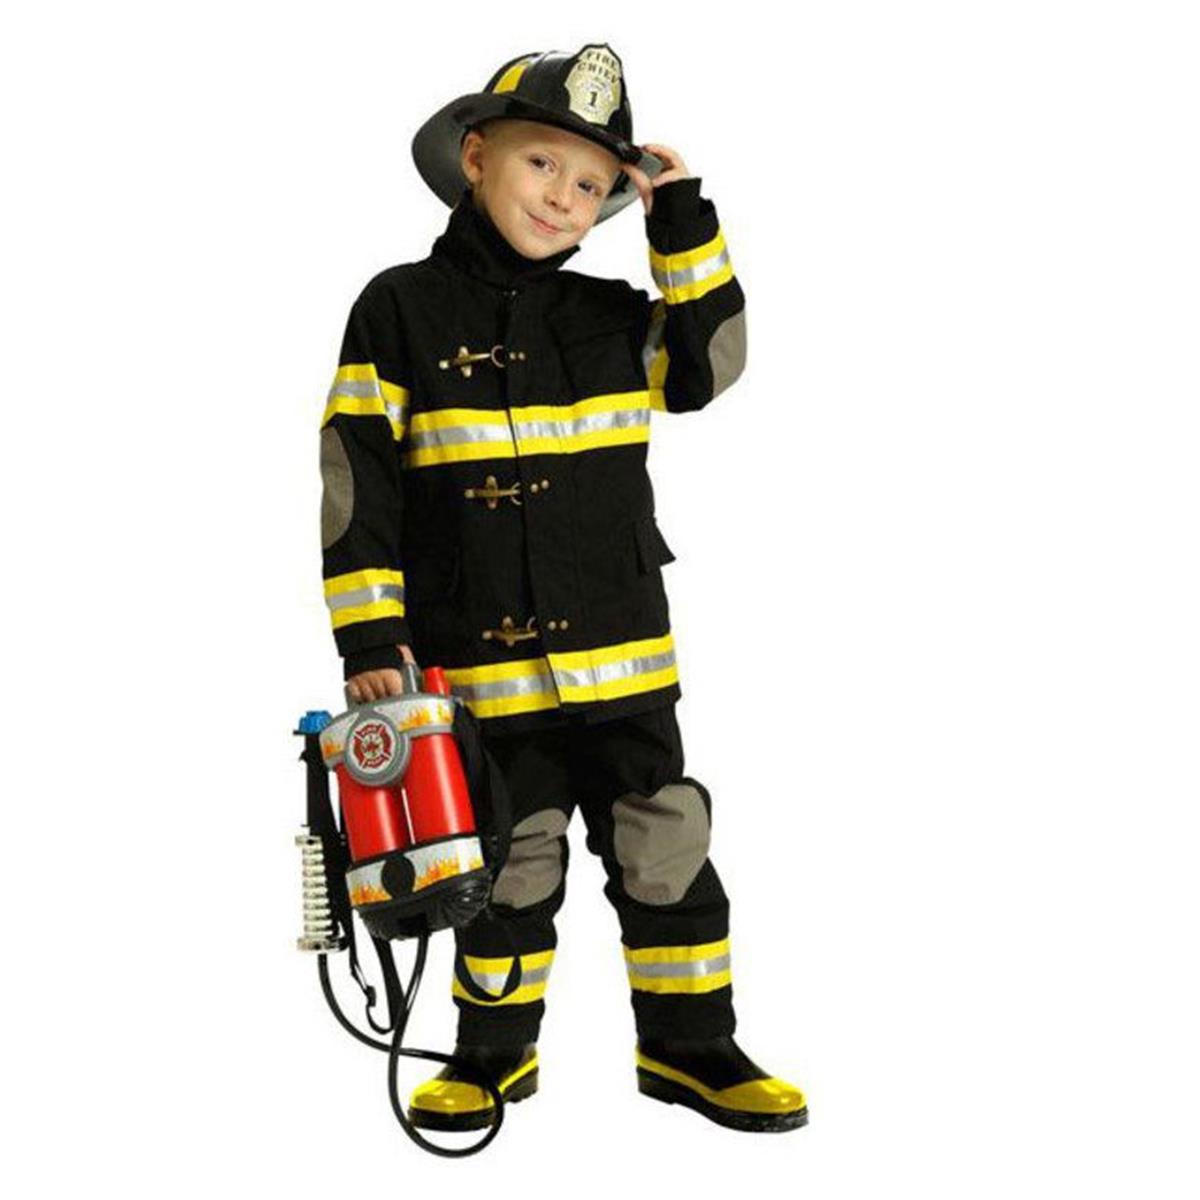 279346 Child Junior Fireman Costume - Medium